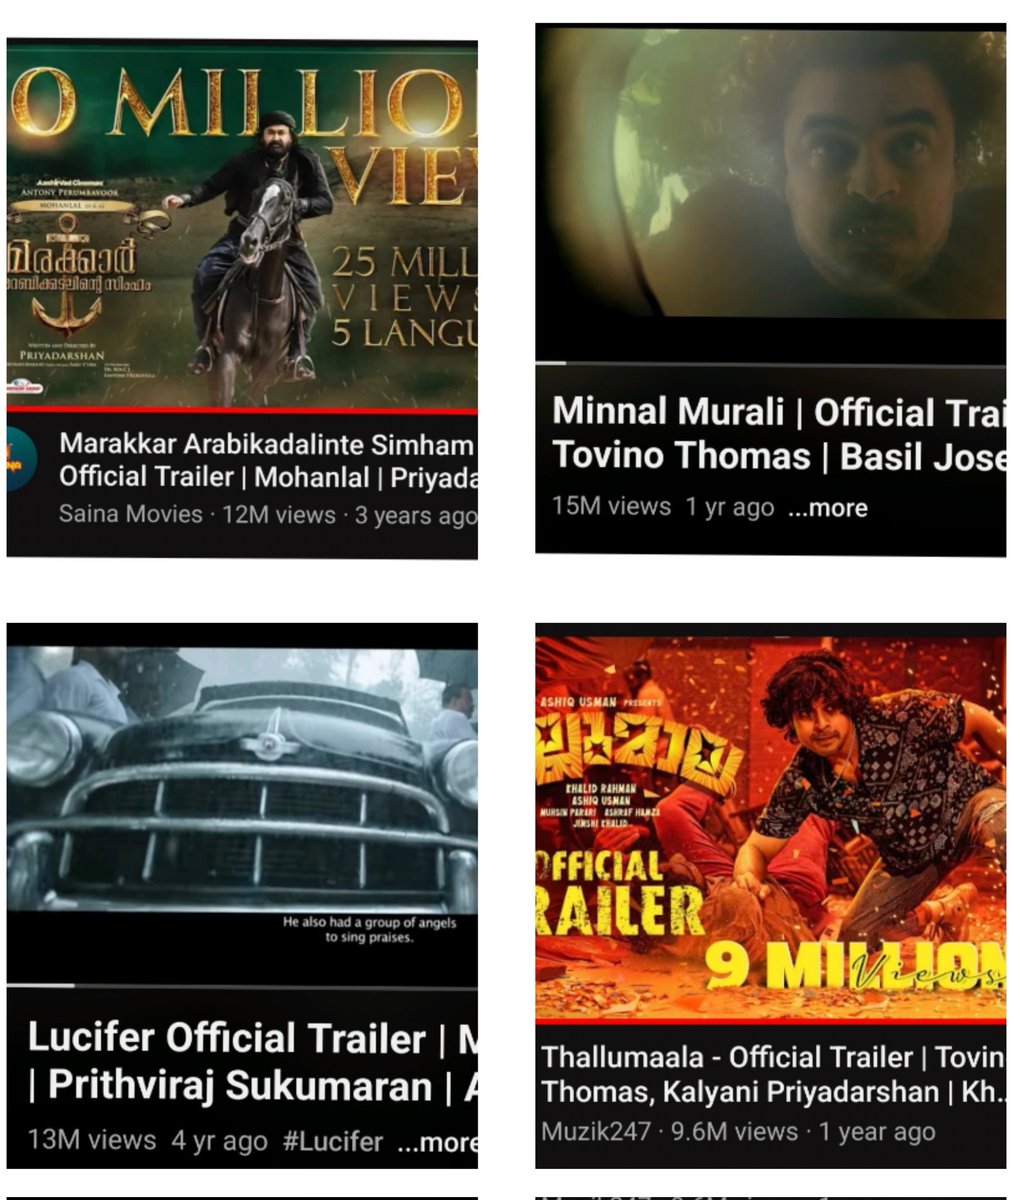 #IMO
Best Trailers of Mollywood till date🤟
ഈ trailer cuts ഉണ്ടാക്കിയ Hype 🥵
#Lucifer 
#Minnalmurali
#Marakkar
#Thallumala 

#Mohanlal #Tovino